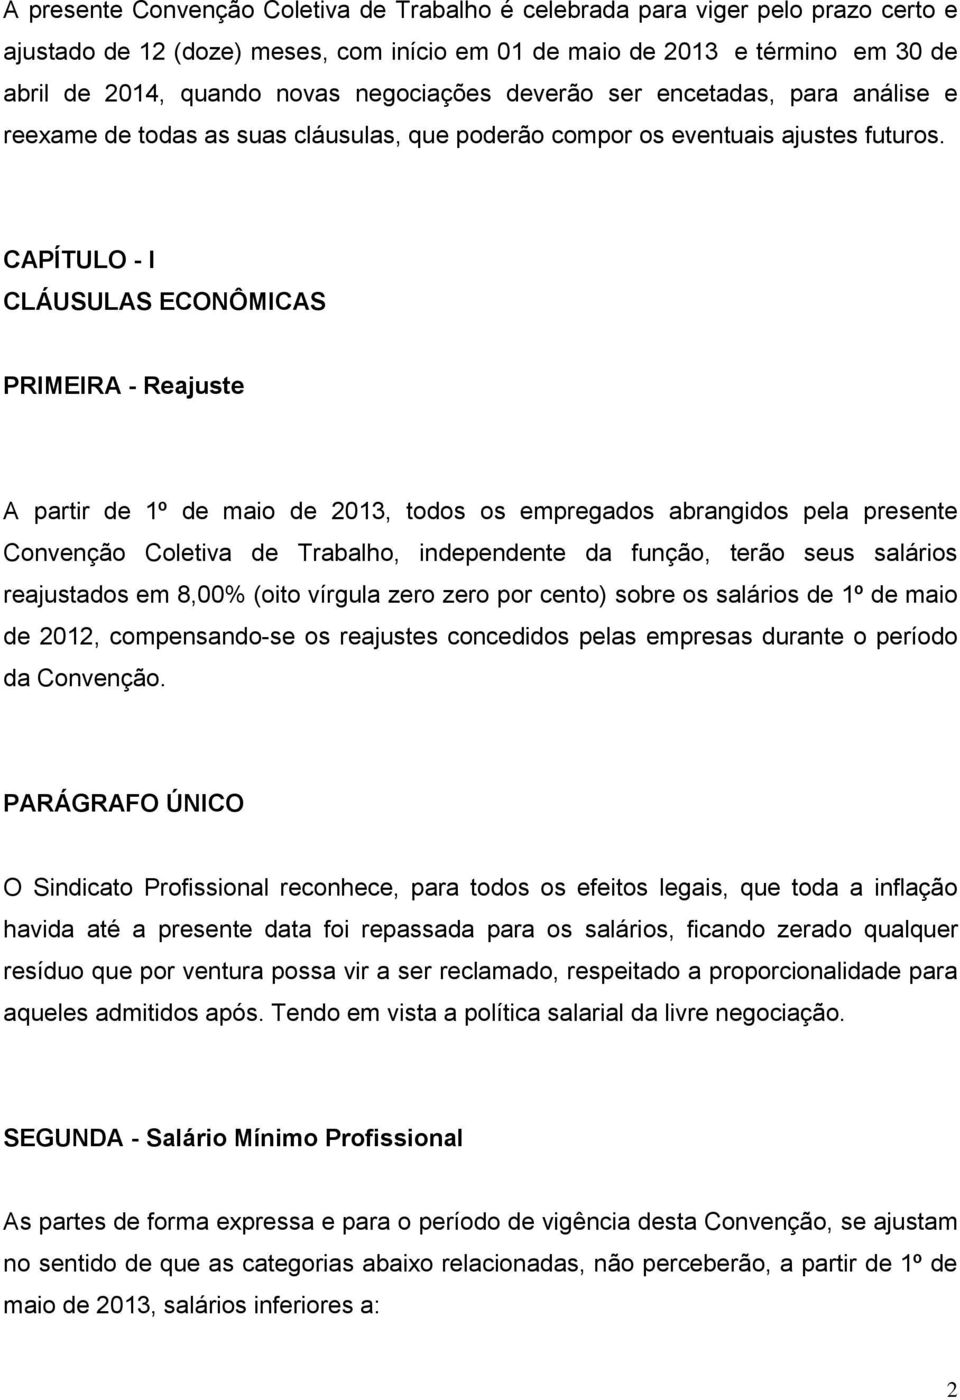 CAPÍTULO - I CLÁUSULAS ECONÔMICAS PRIMEIRA - Reajuste A partir de 1º de maio de 2013, todos os empregados abrangidos pela presente Convenção Coletiva de Trabalho, independente da função, terão seus